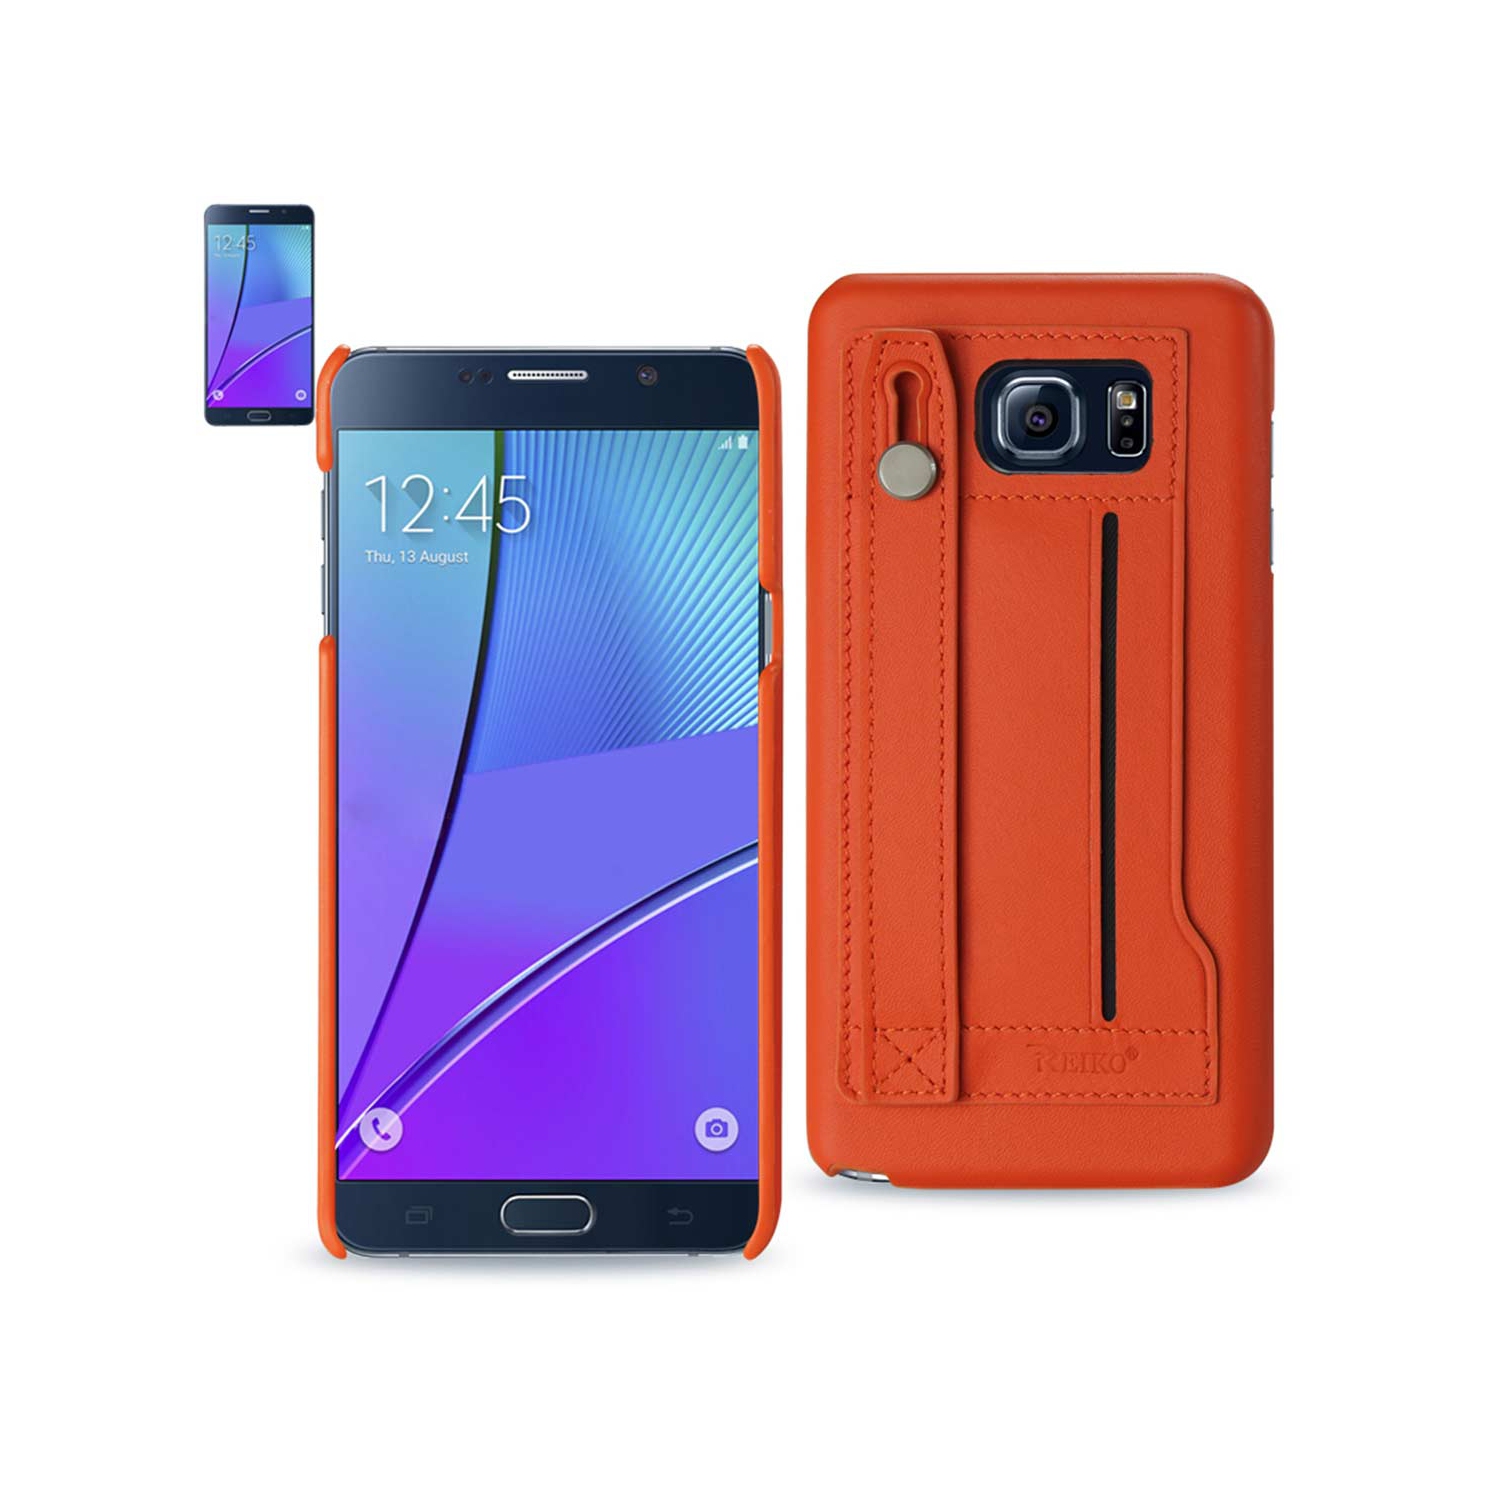 Reiko Samsung Galaxy Note 5 Genuine Leather Hand Strap Case In Tangerine